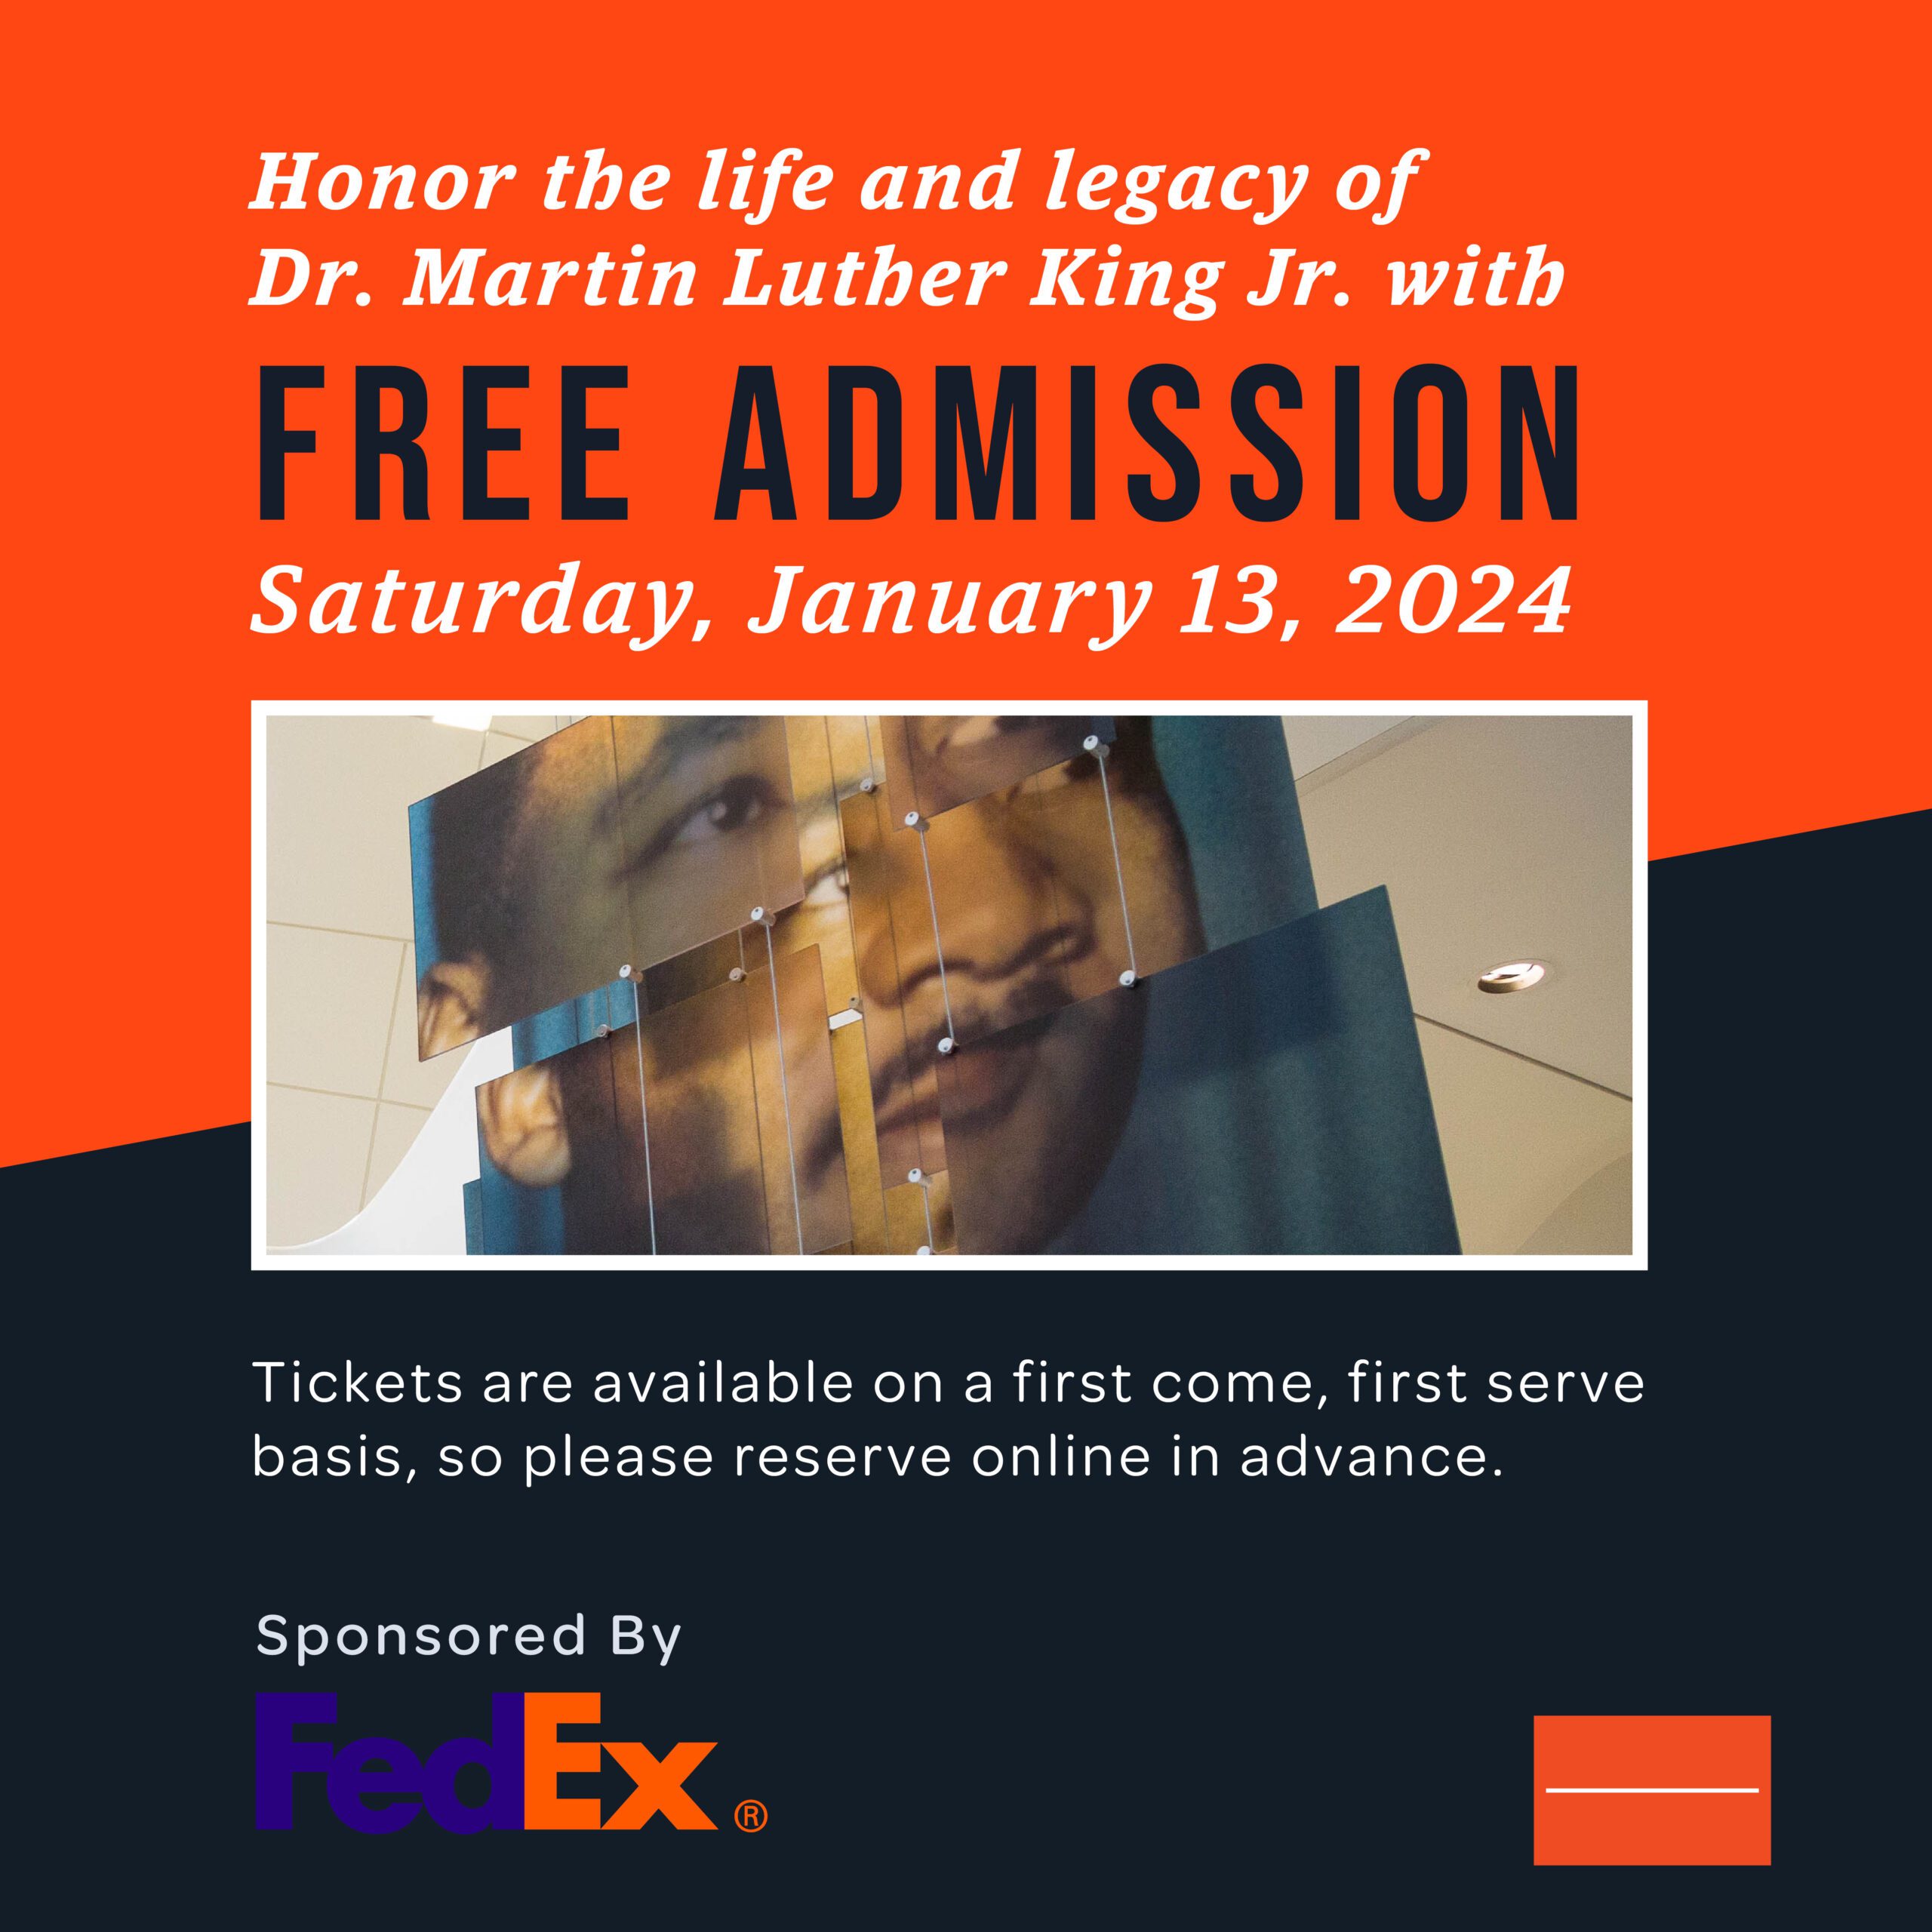 FedEx Free Admission Day Jan. 13, 2024